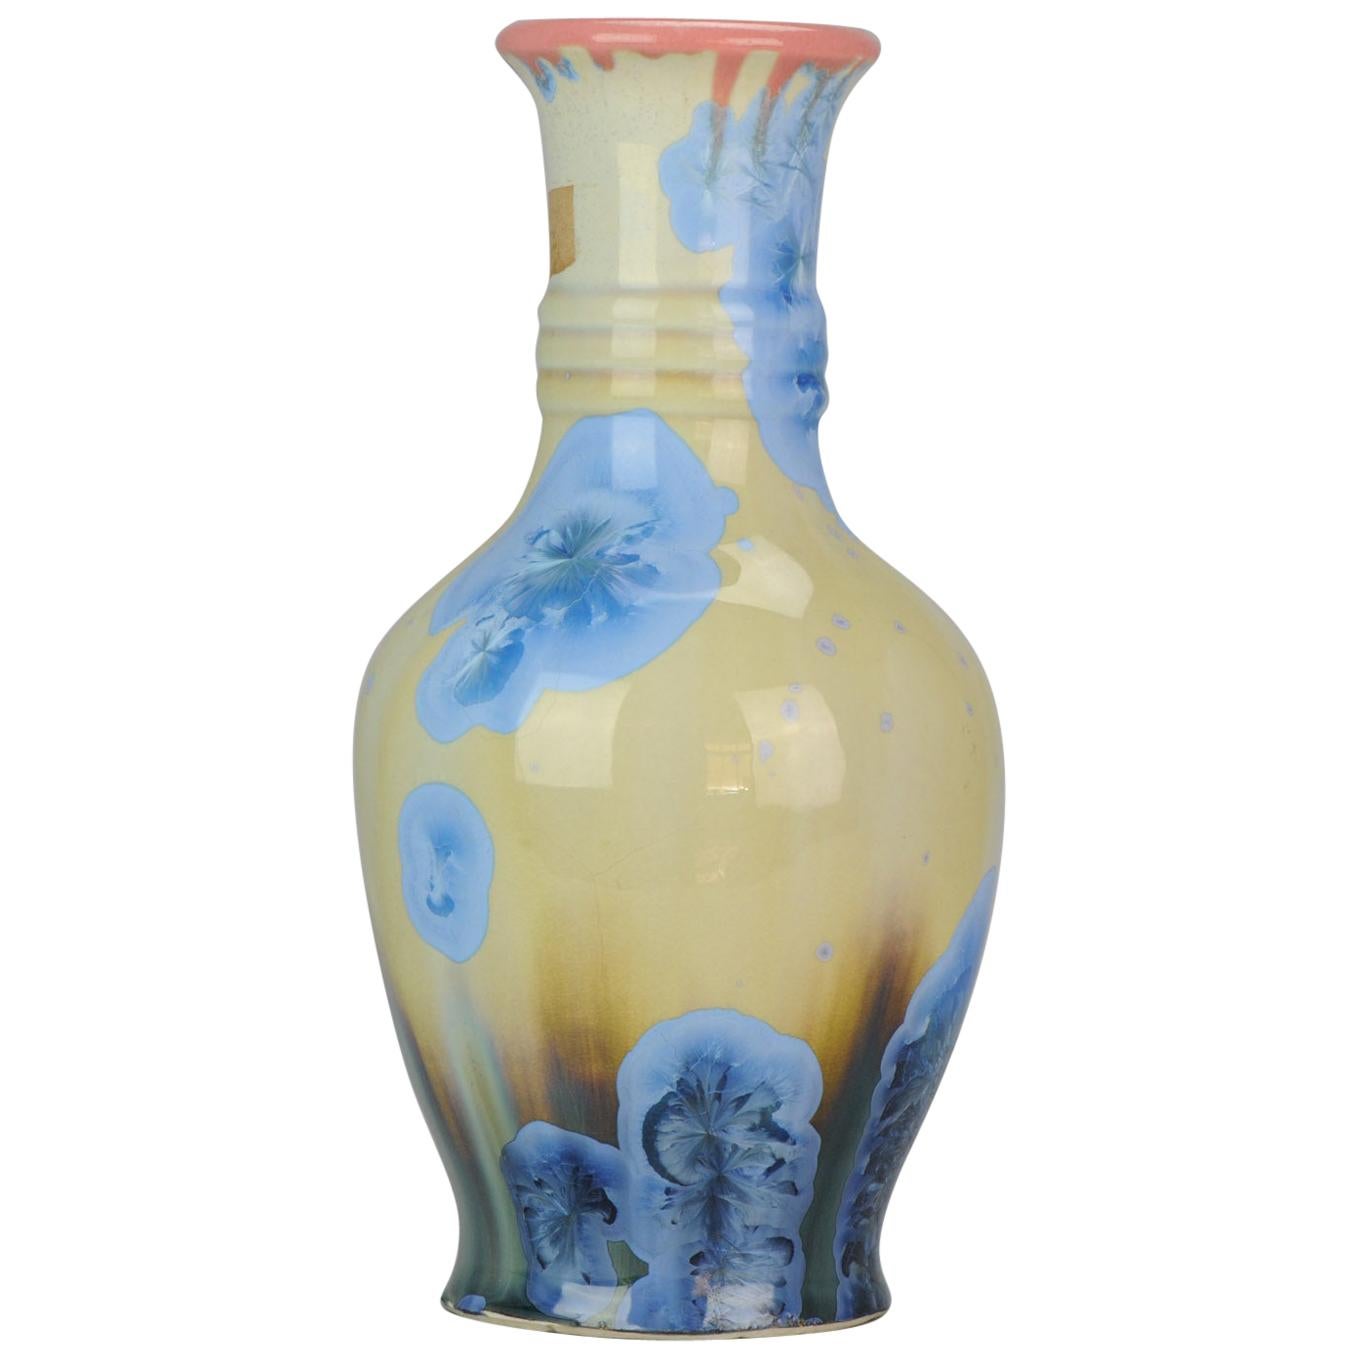 Shiwan 20th Century PRoC 1970-1980 Chinese Porcelain Vase Crystalline Glaz